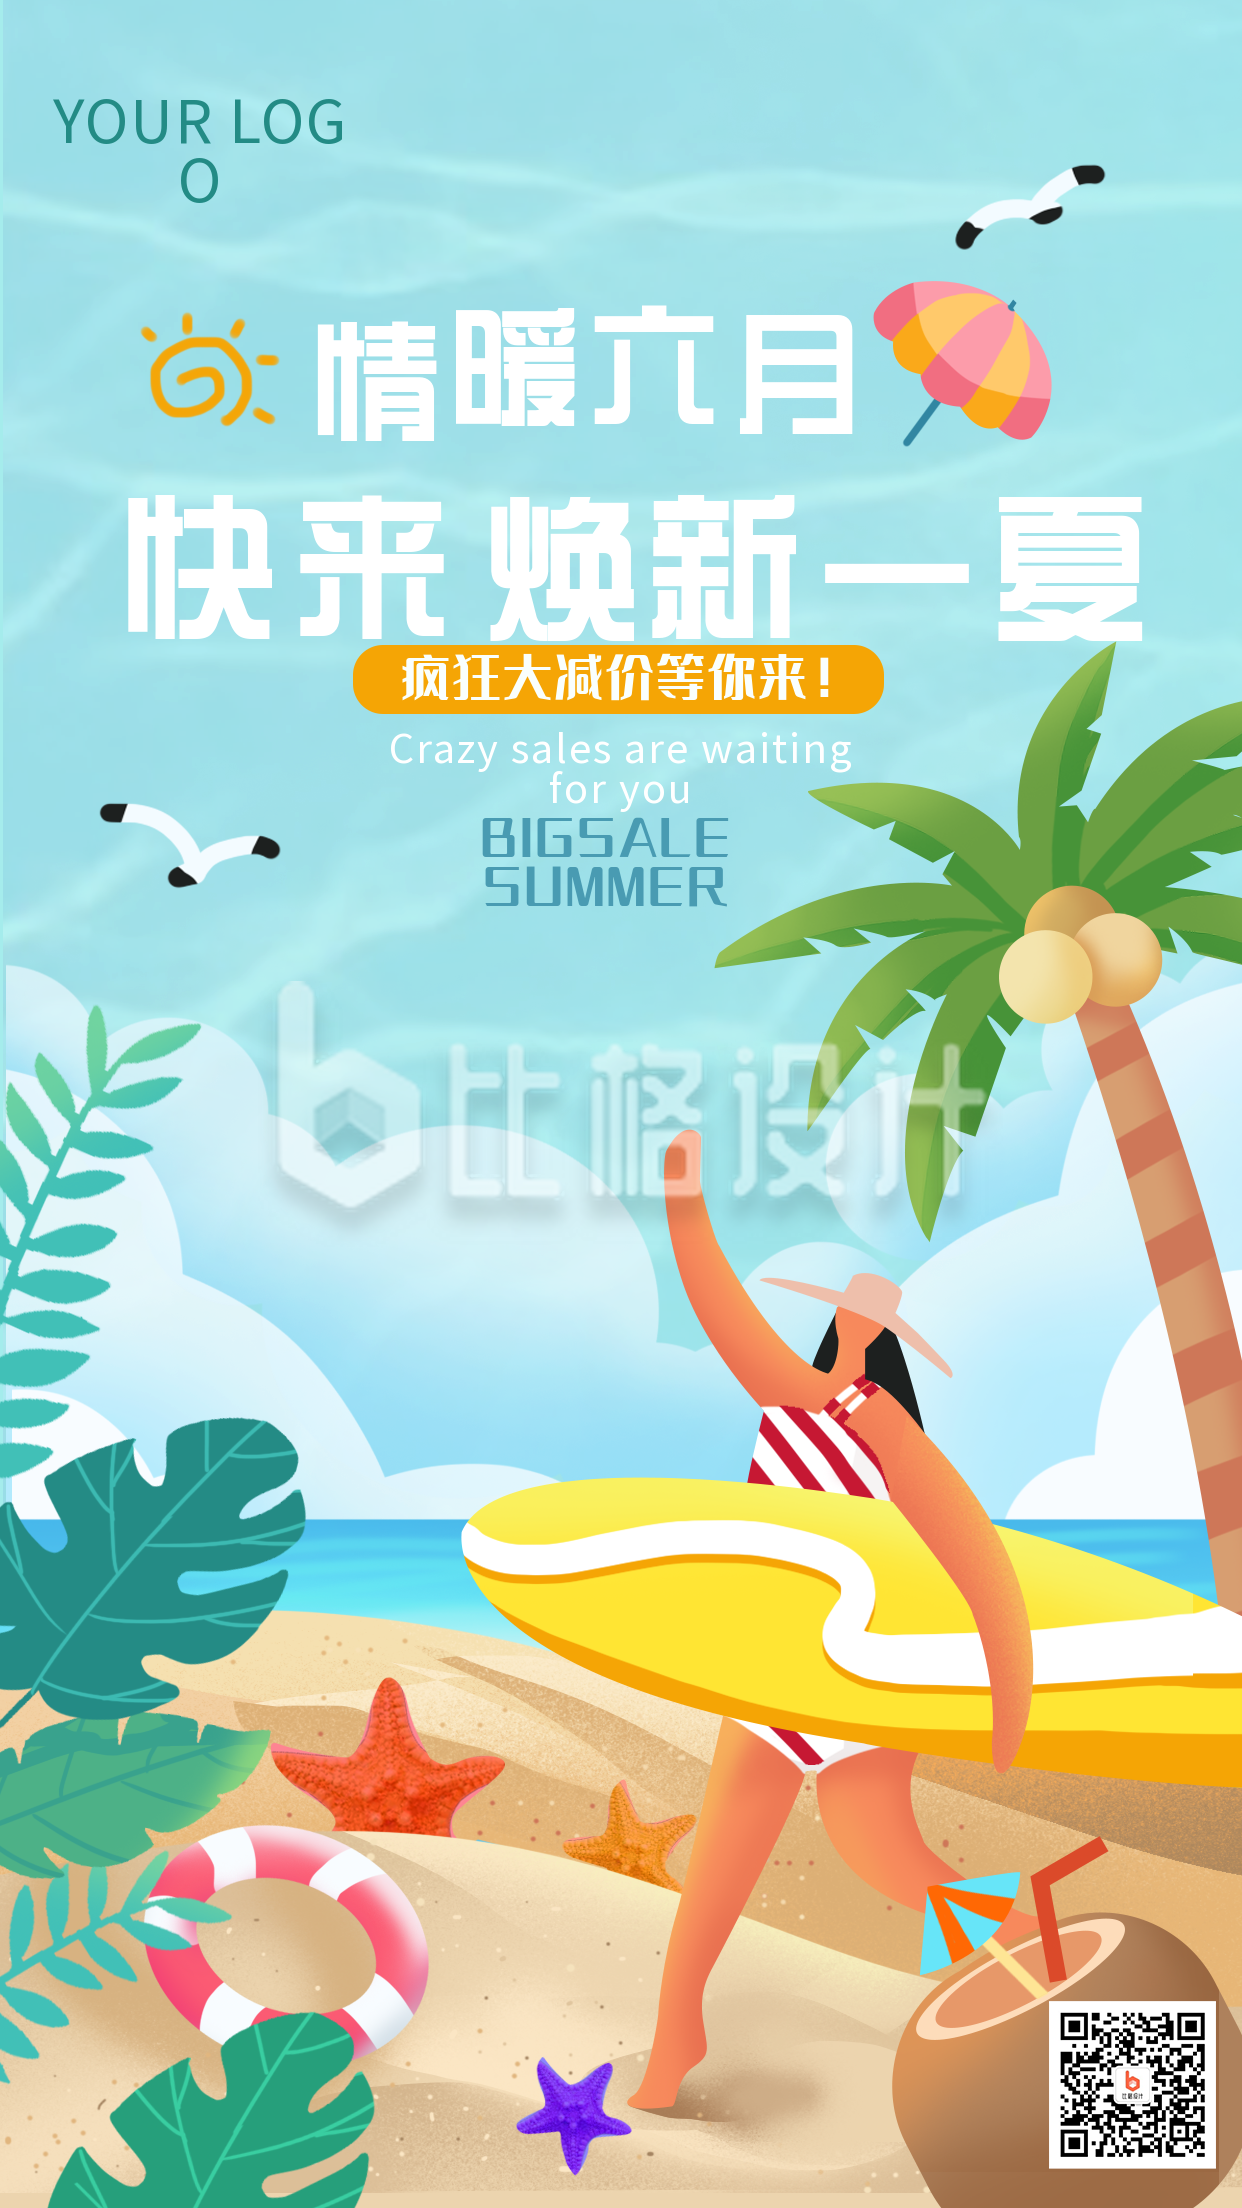 夏季限时促销优惠福利大礼包手绘手机海报